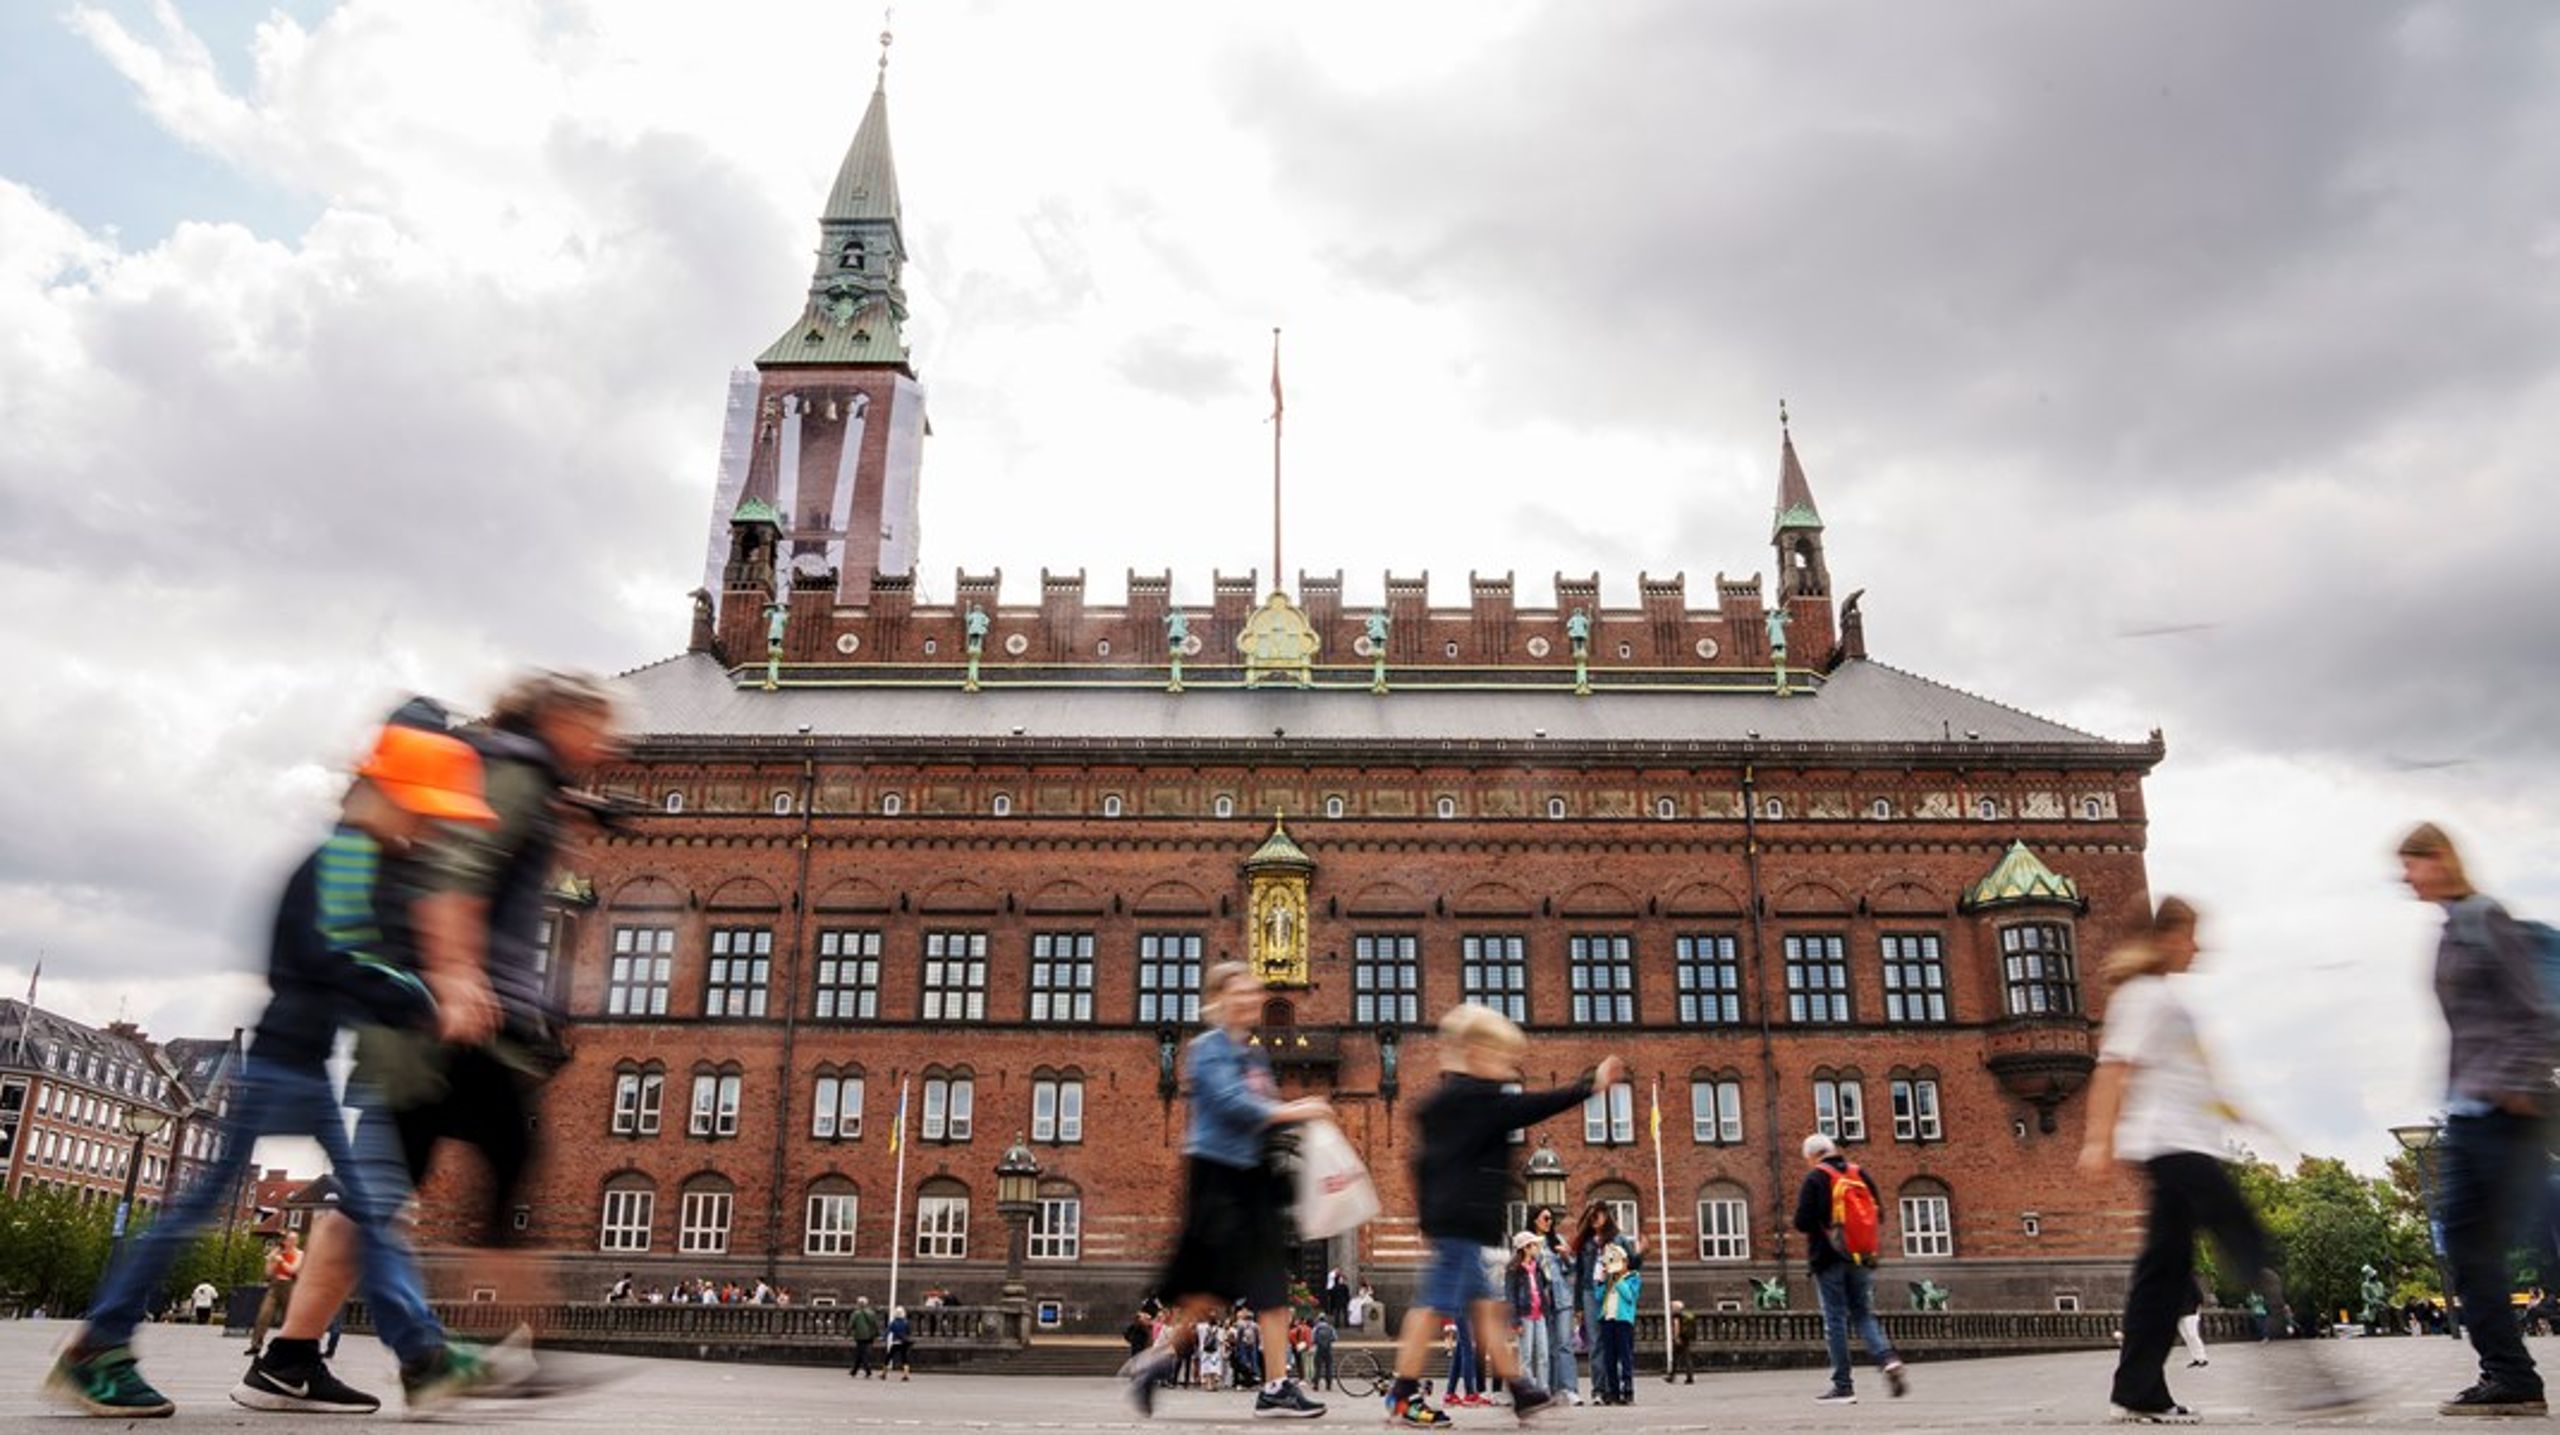 Altinget Hovedstaden spørger aktører fra Københavns Rådhus såvel som resten af hovedstaden: Hvordan ser hovedstaden ud i fremtiden? Arkivfoto.